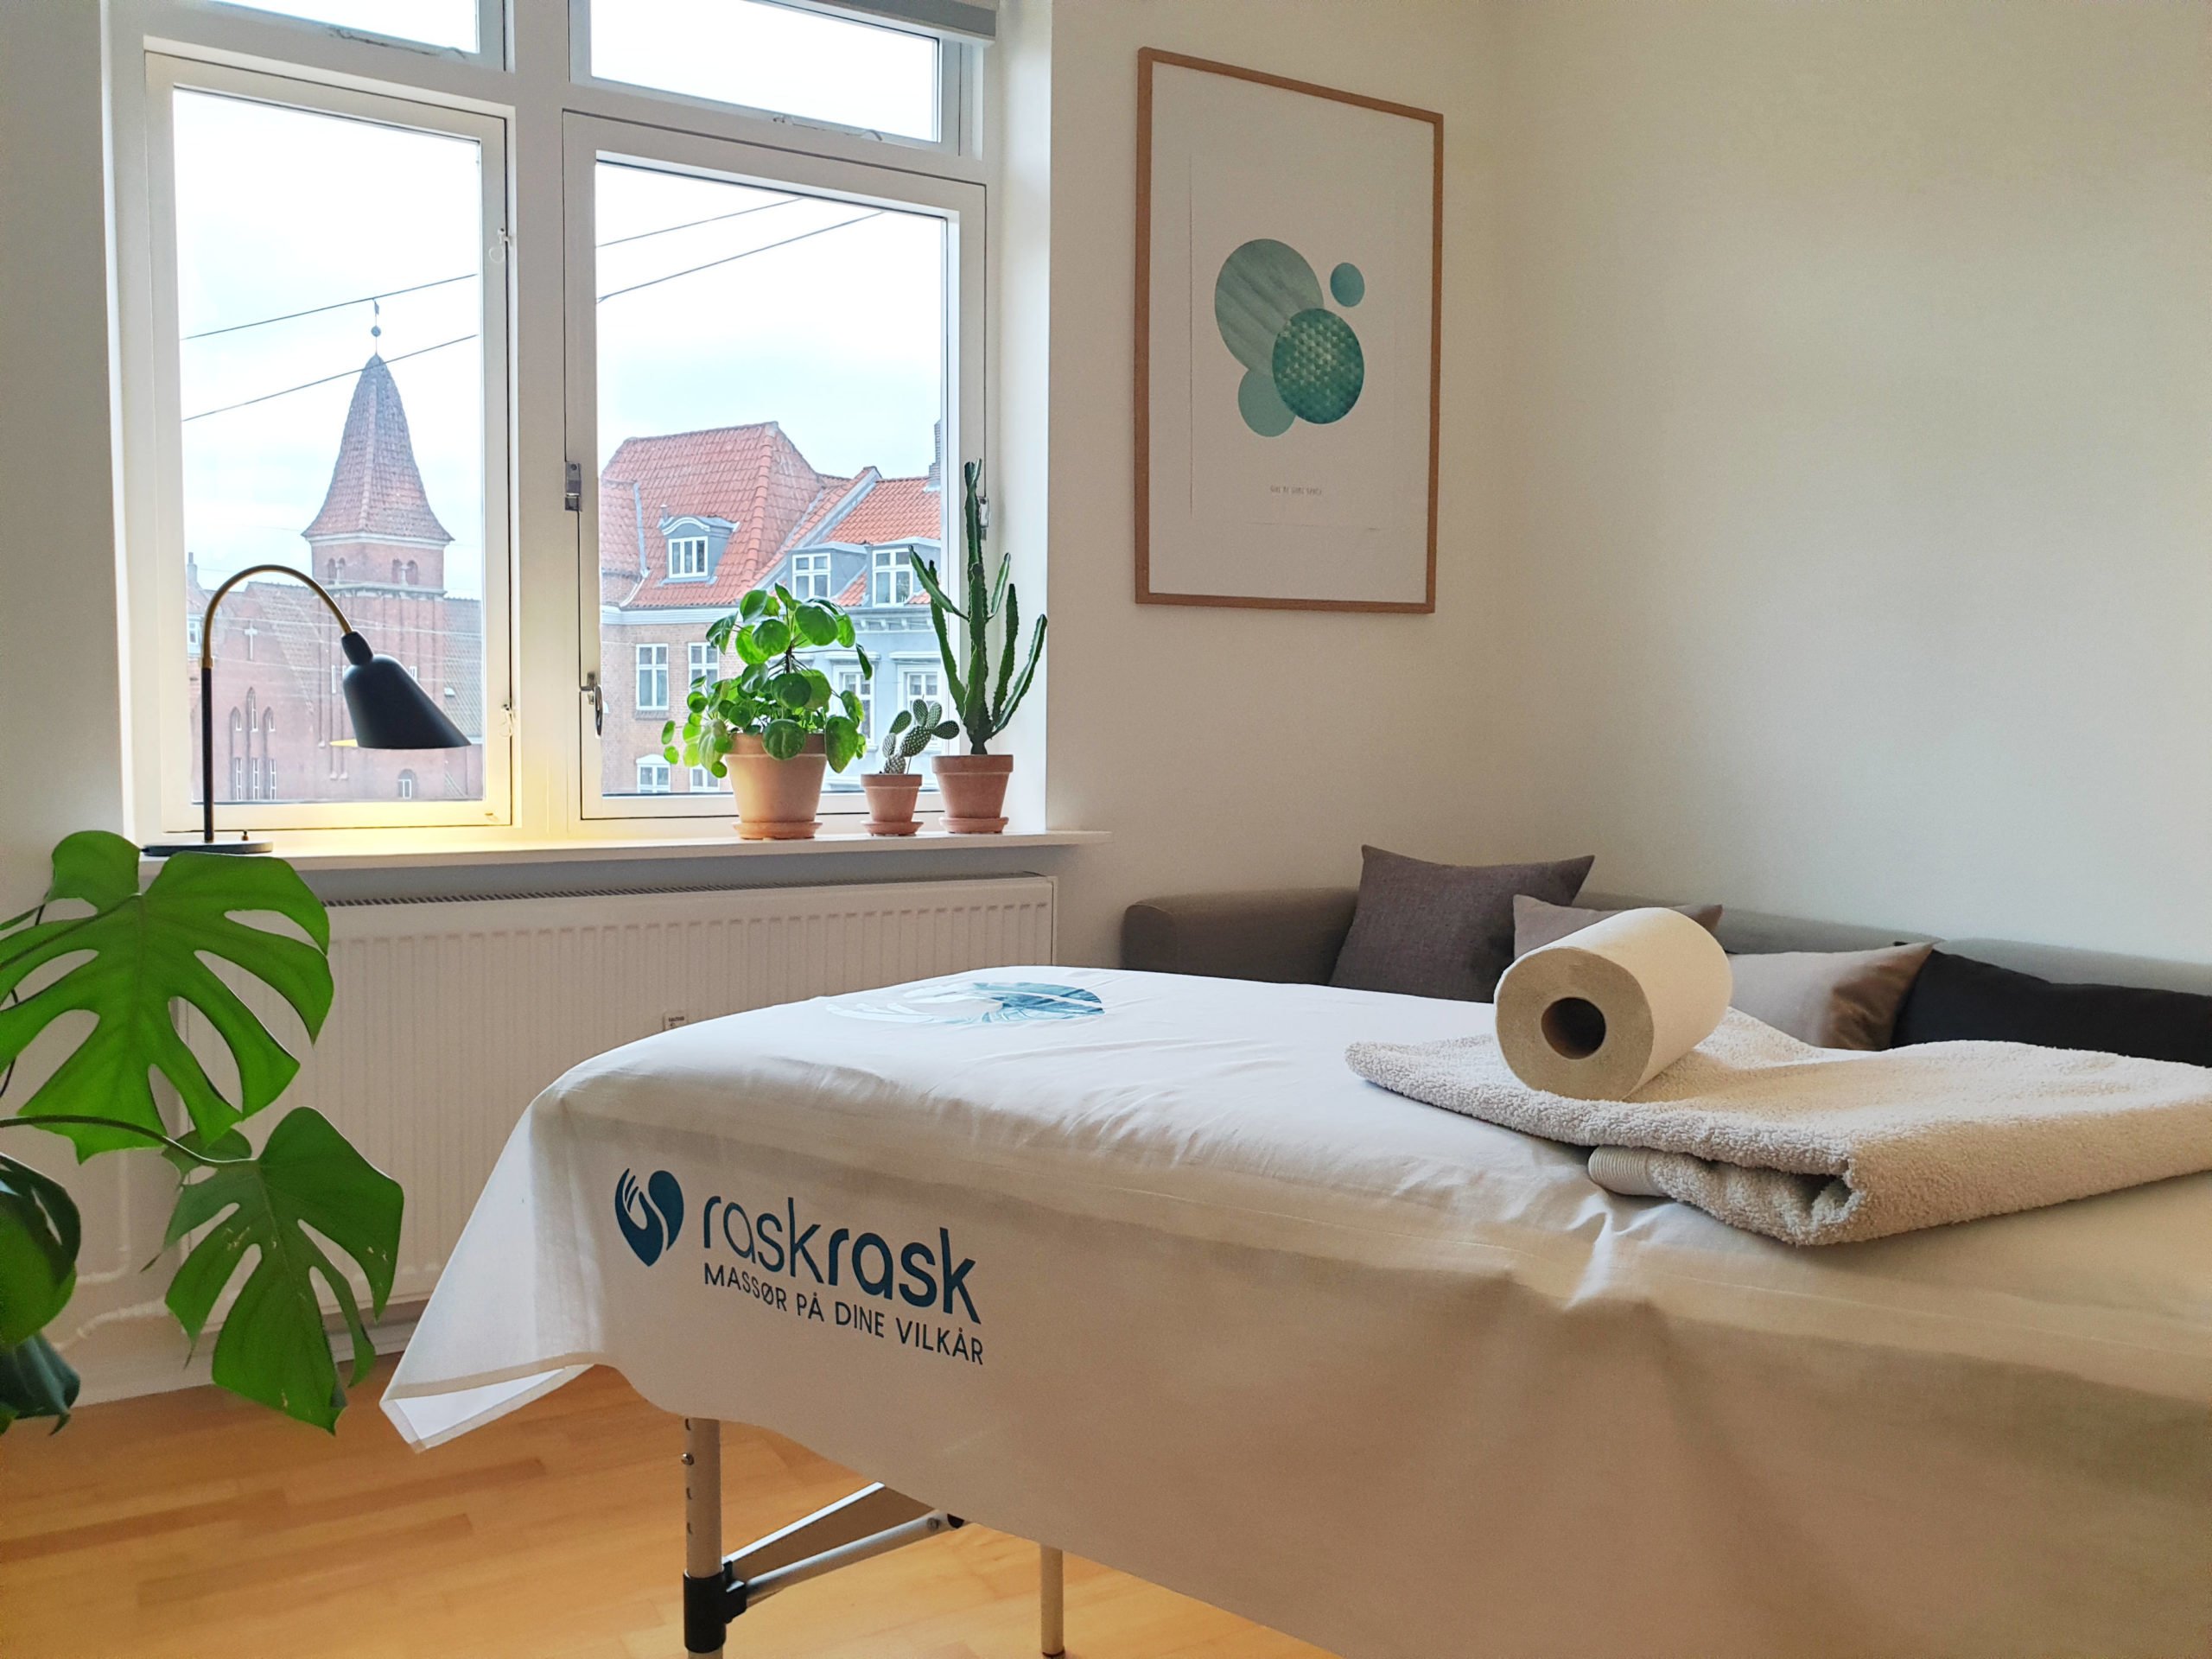 I Nørresundby står massagebriks klar til at massøren kommer i kundens hjem og yder massage